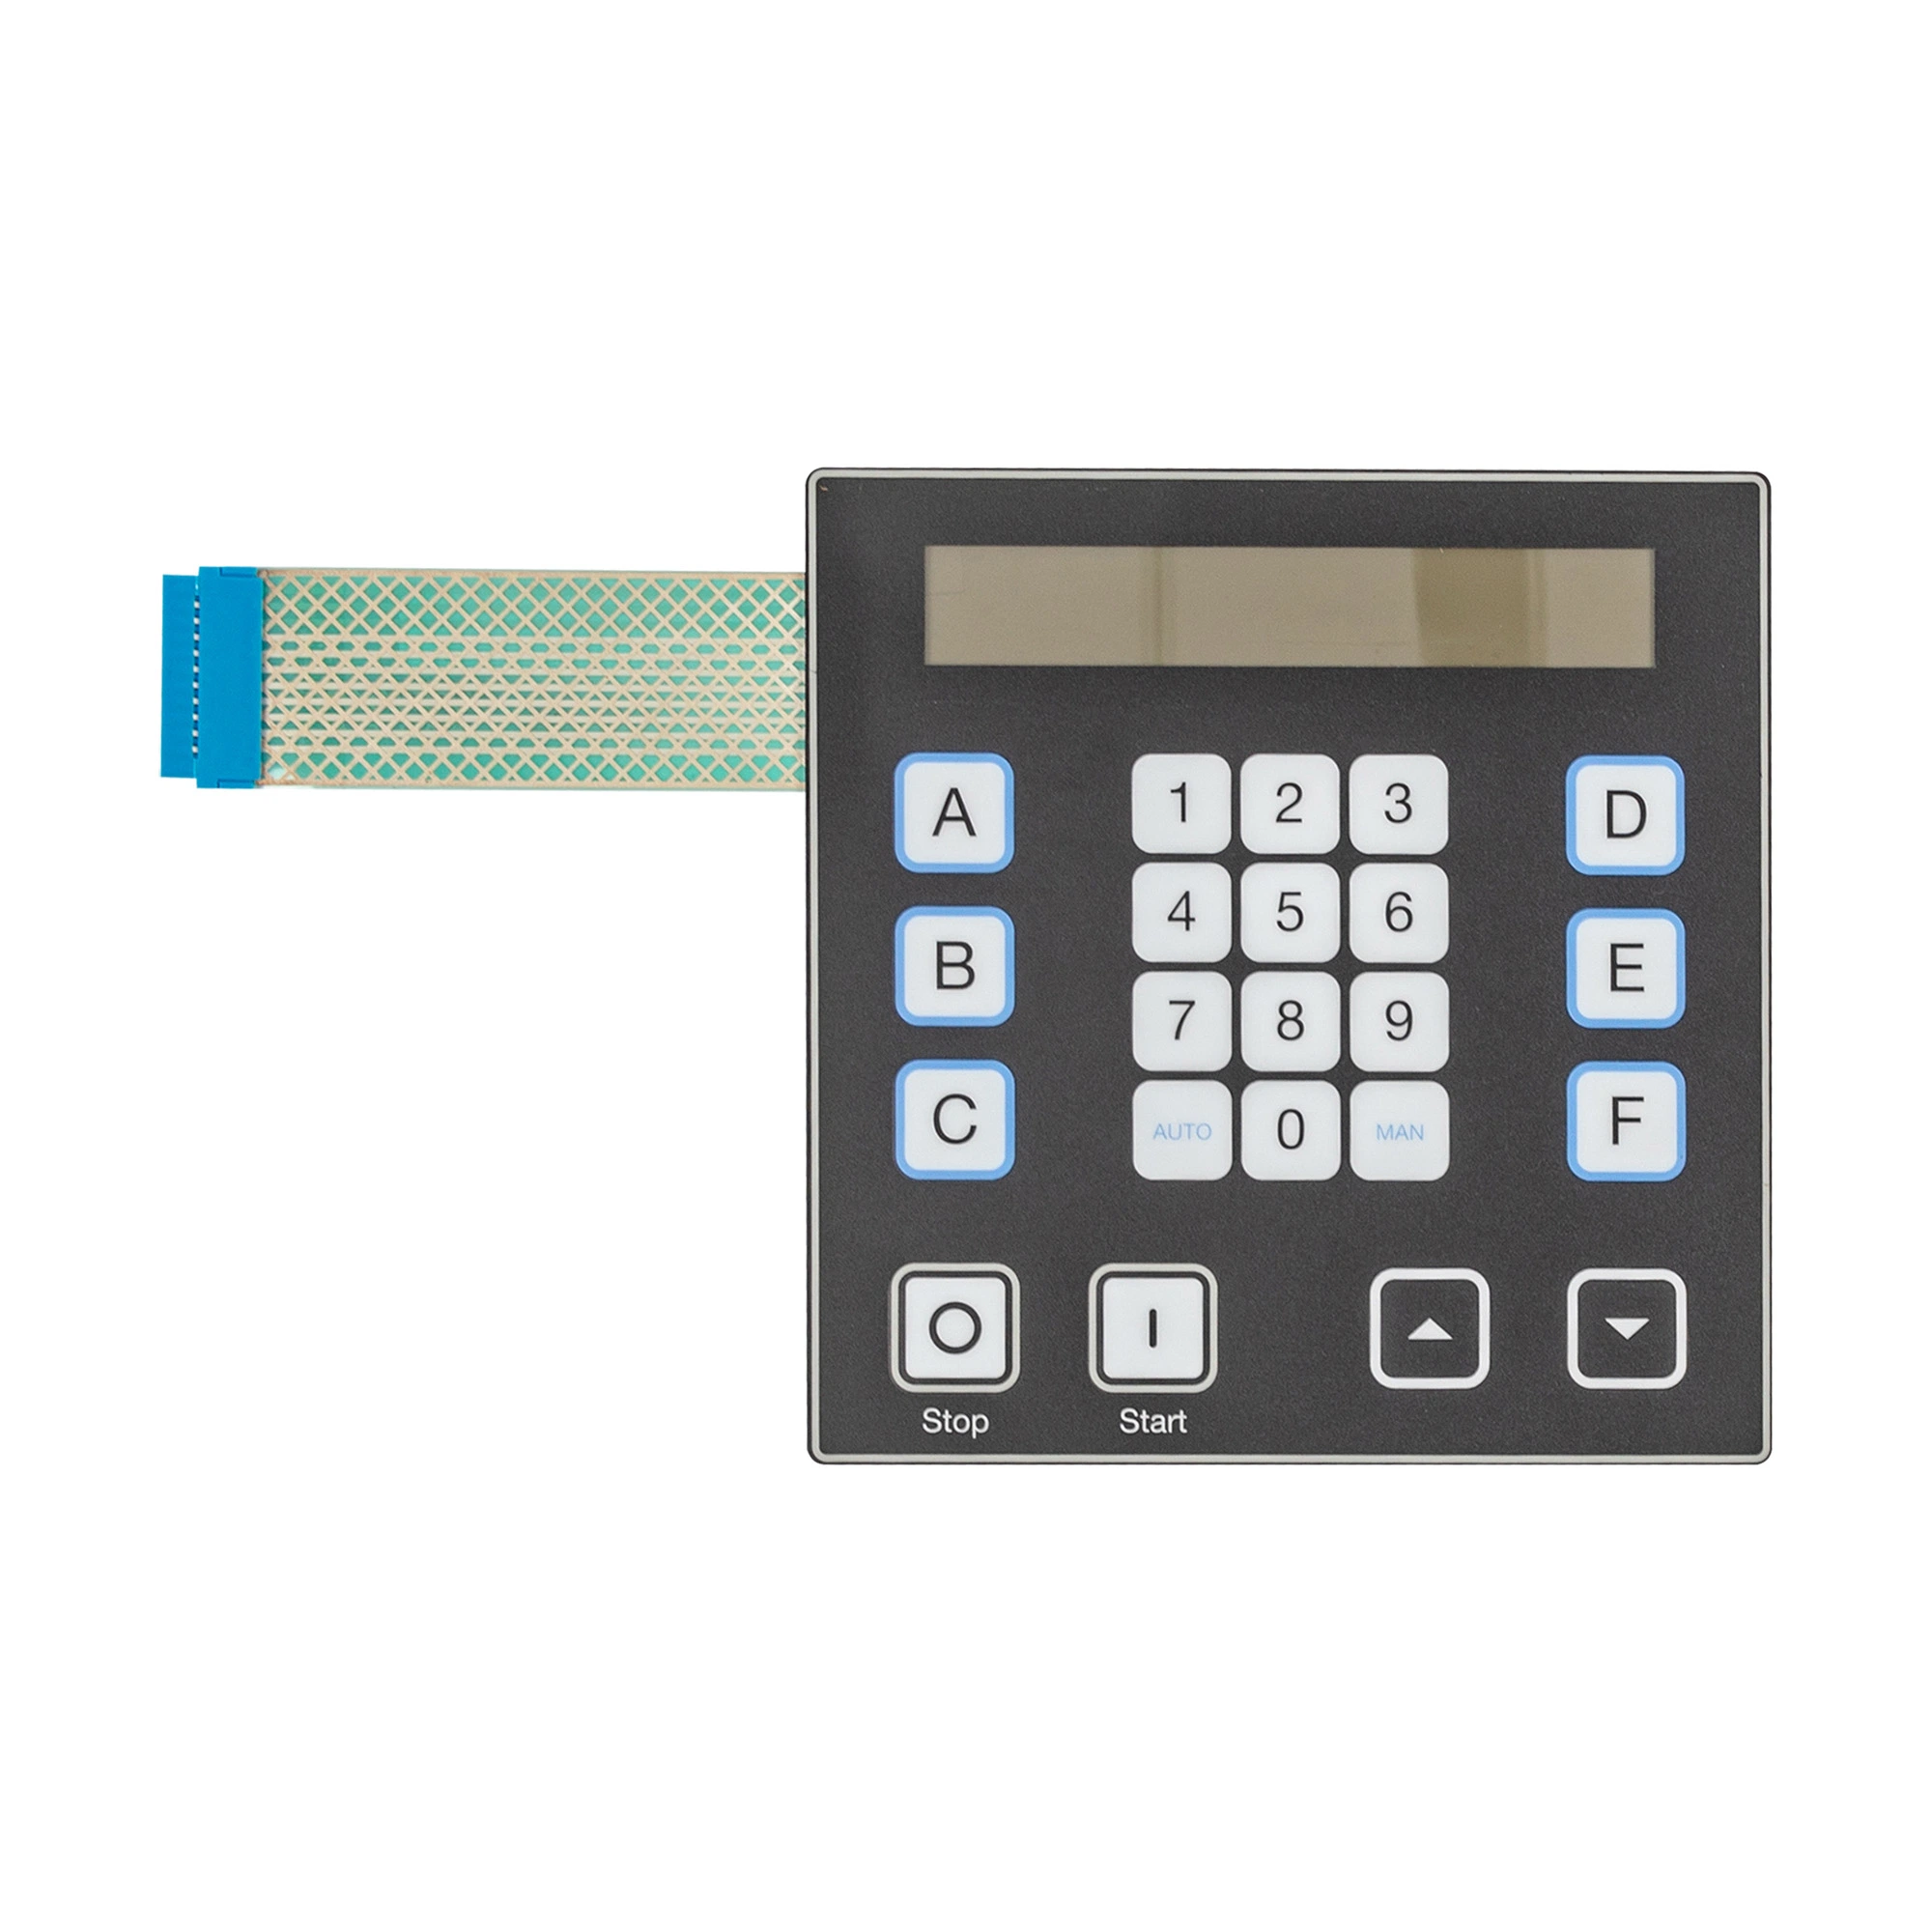 Custom электронного переключателя мембранной клавиатуры с графическим наложения